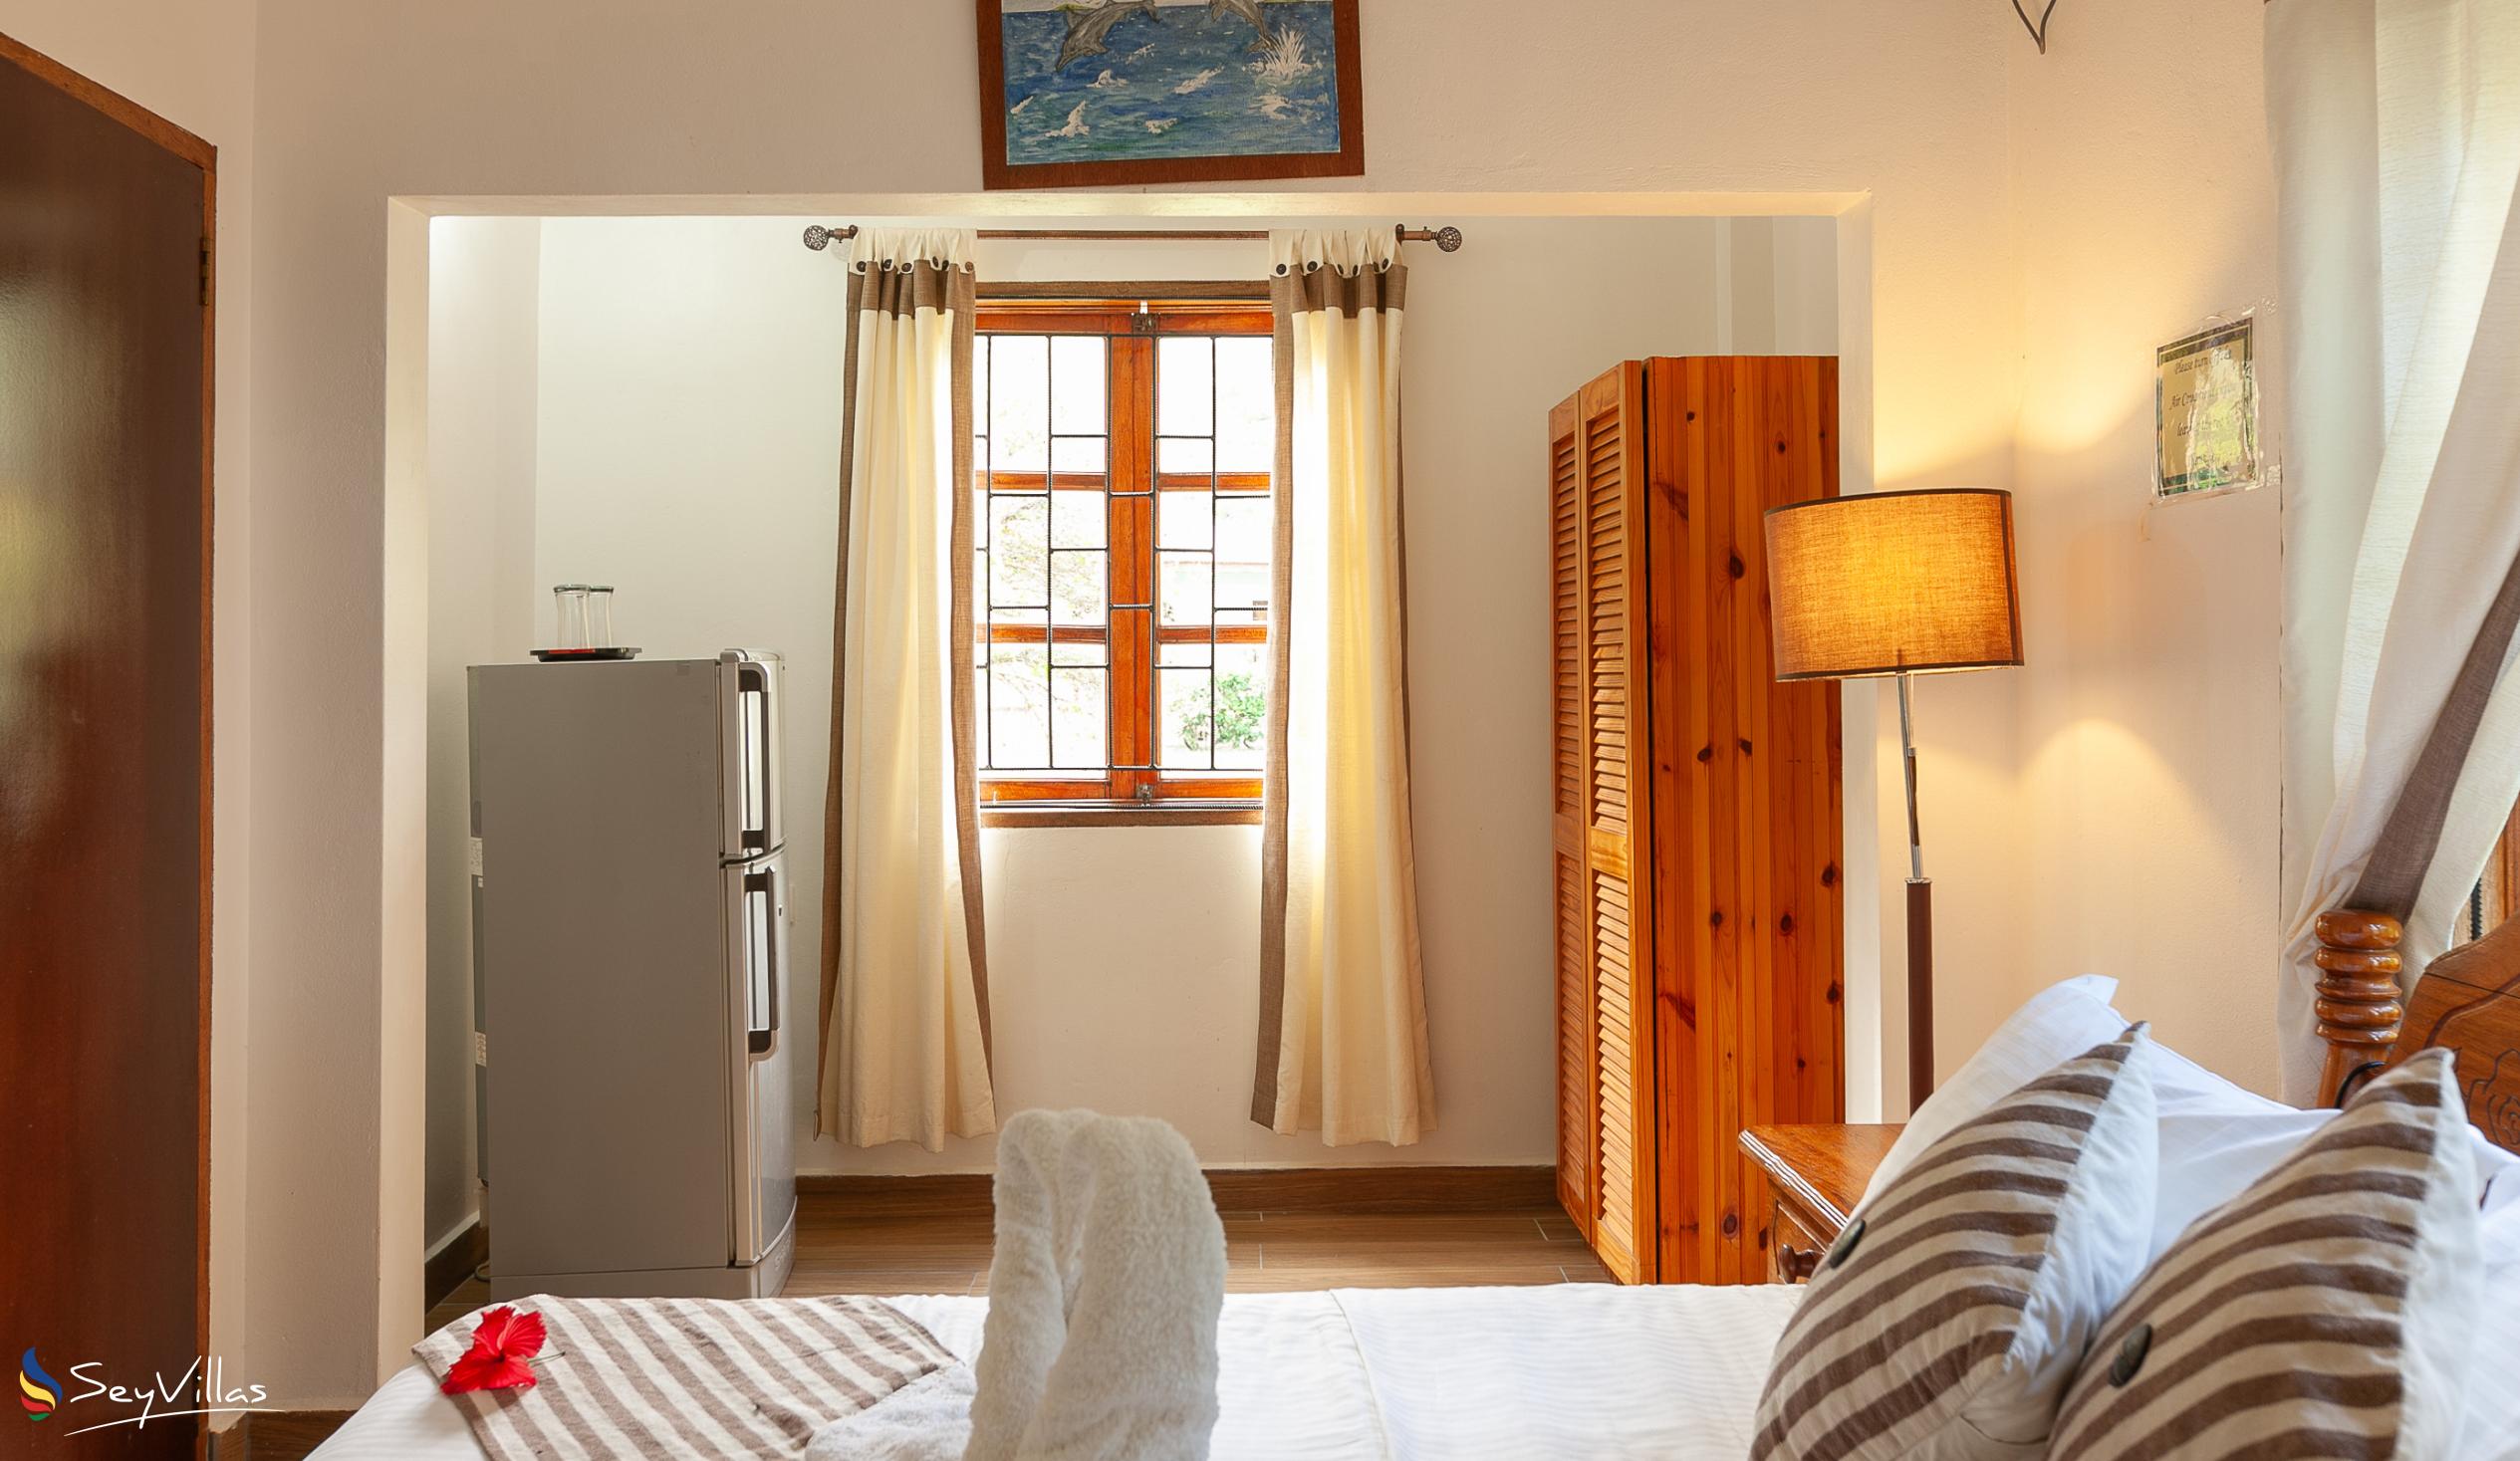 Photo 68: Tannette's Villa - Standard Double Room - La Digue (Seychelles)